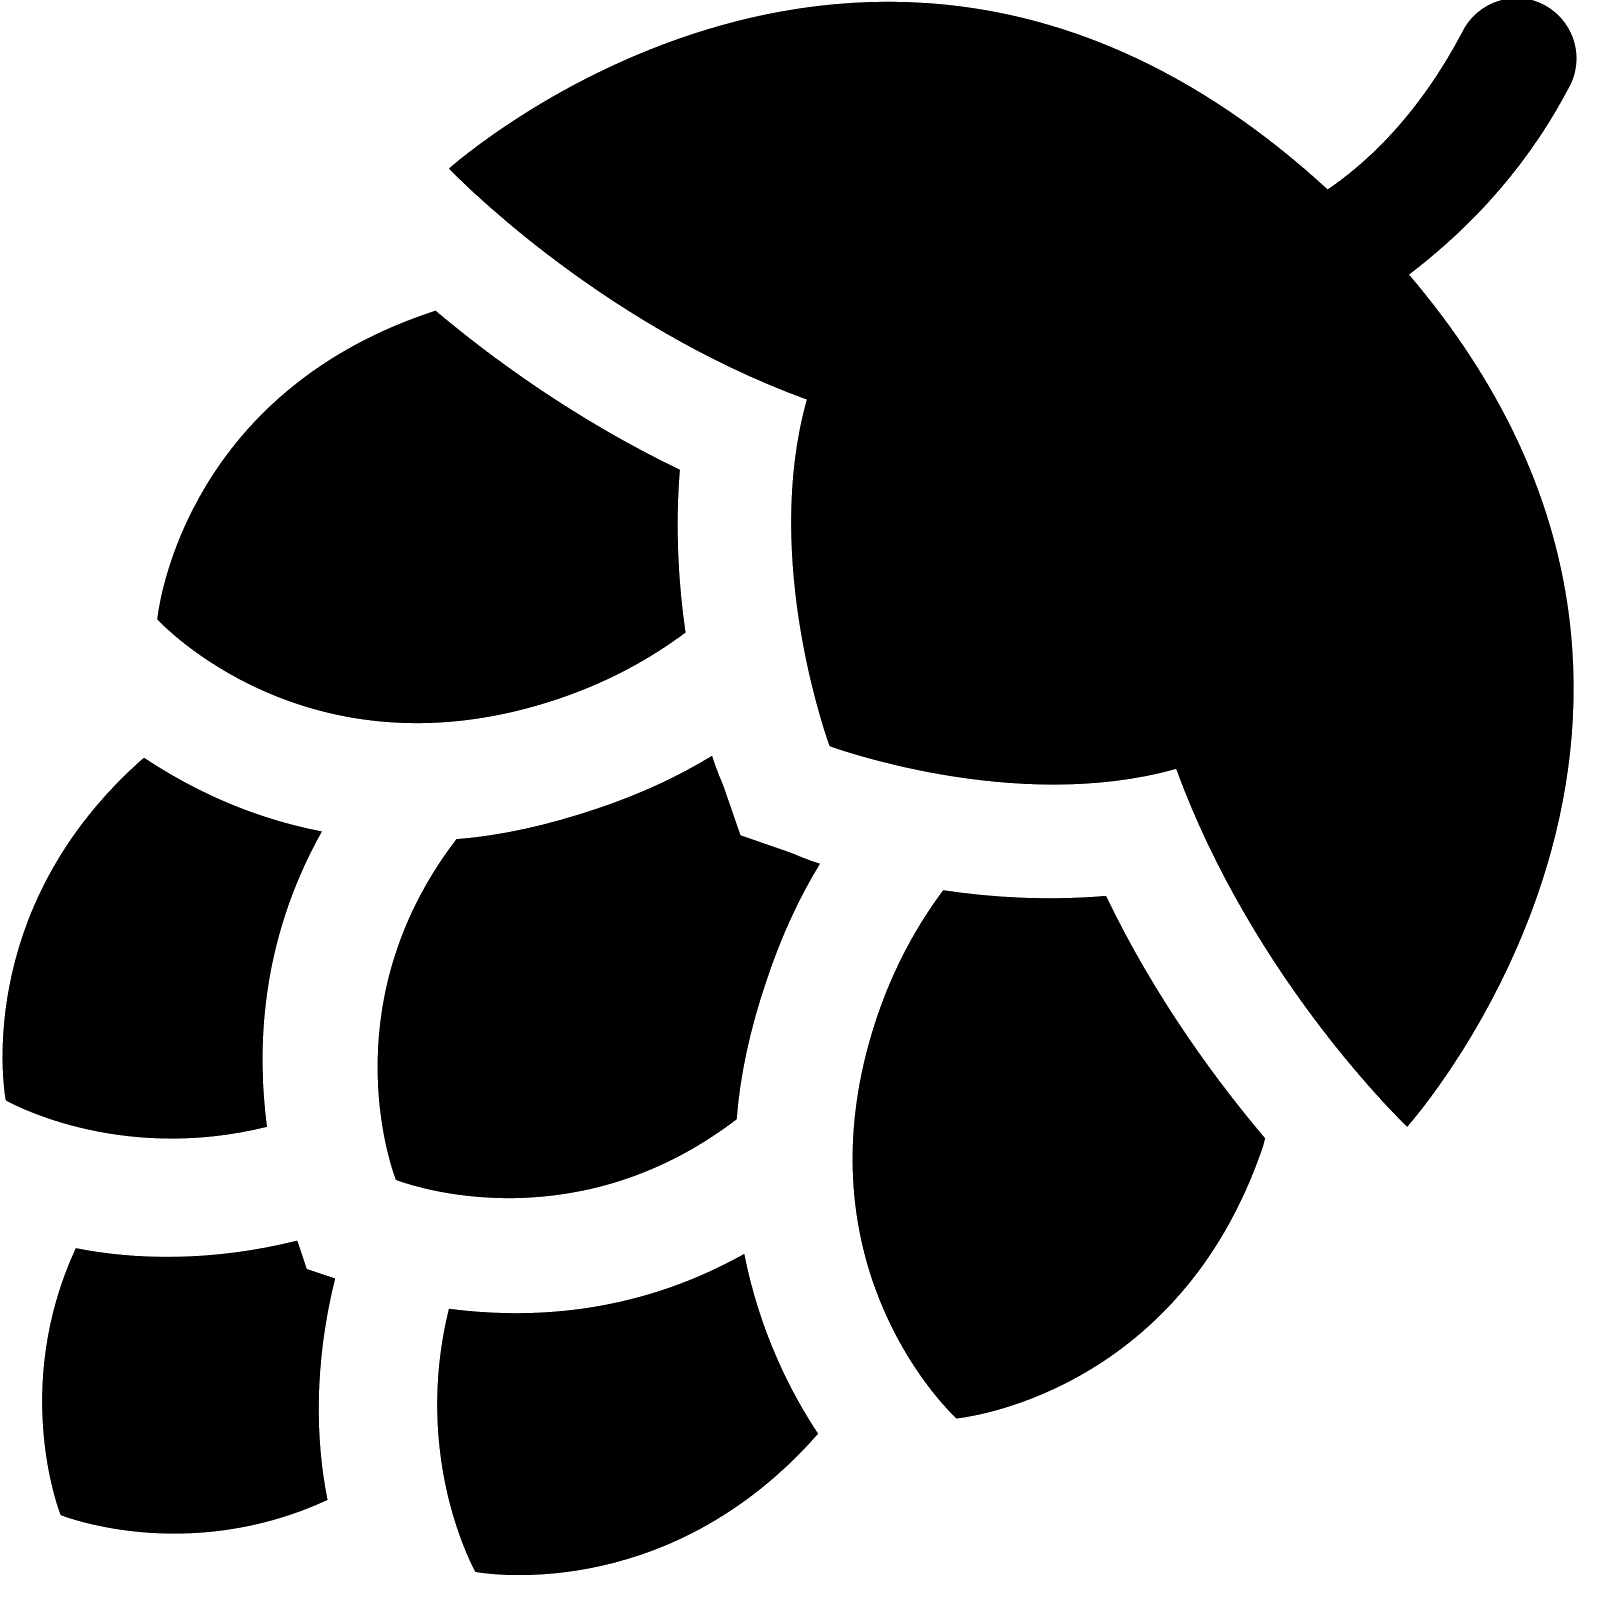 Hops Logo Black And White